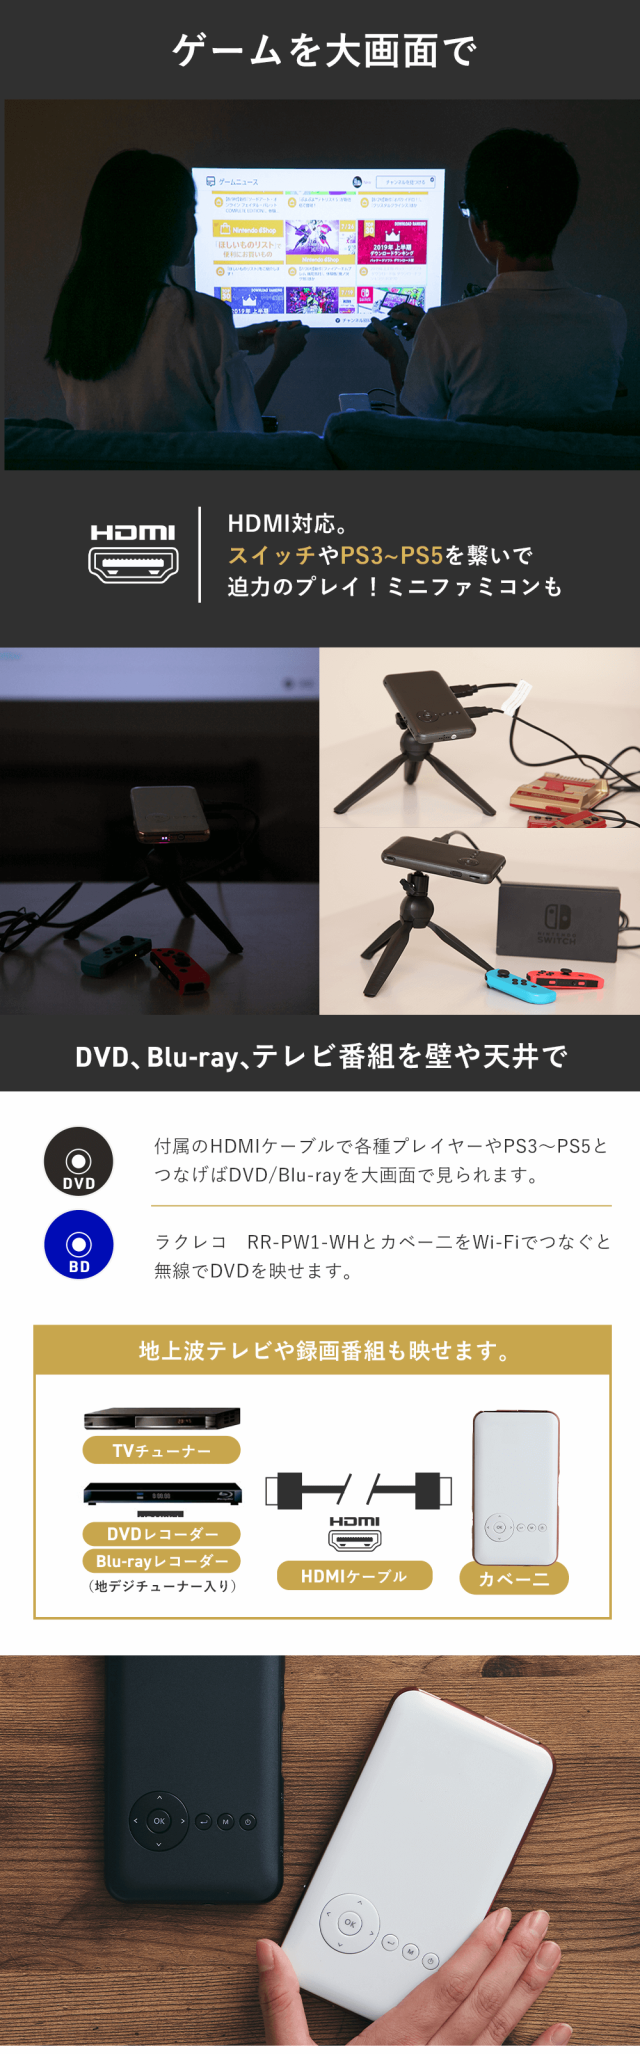 3 プロジェクタ DVD